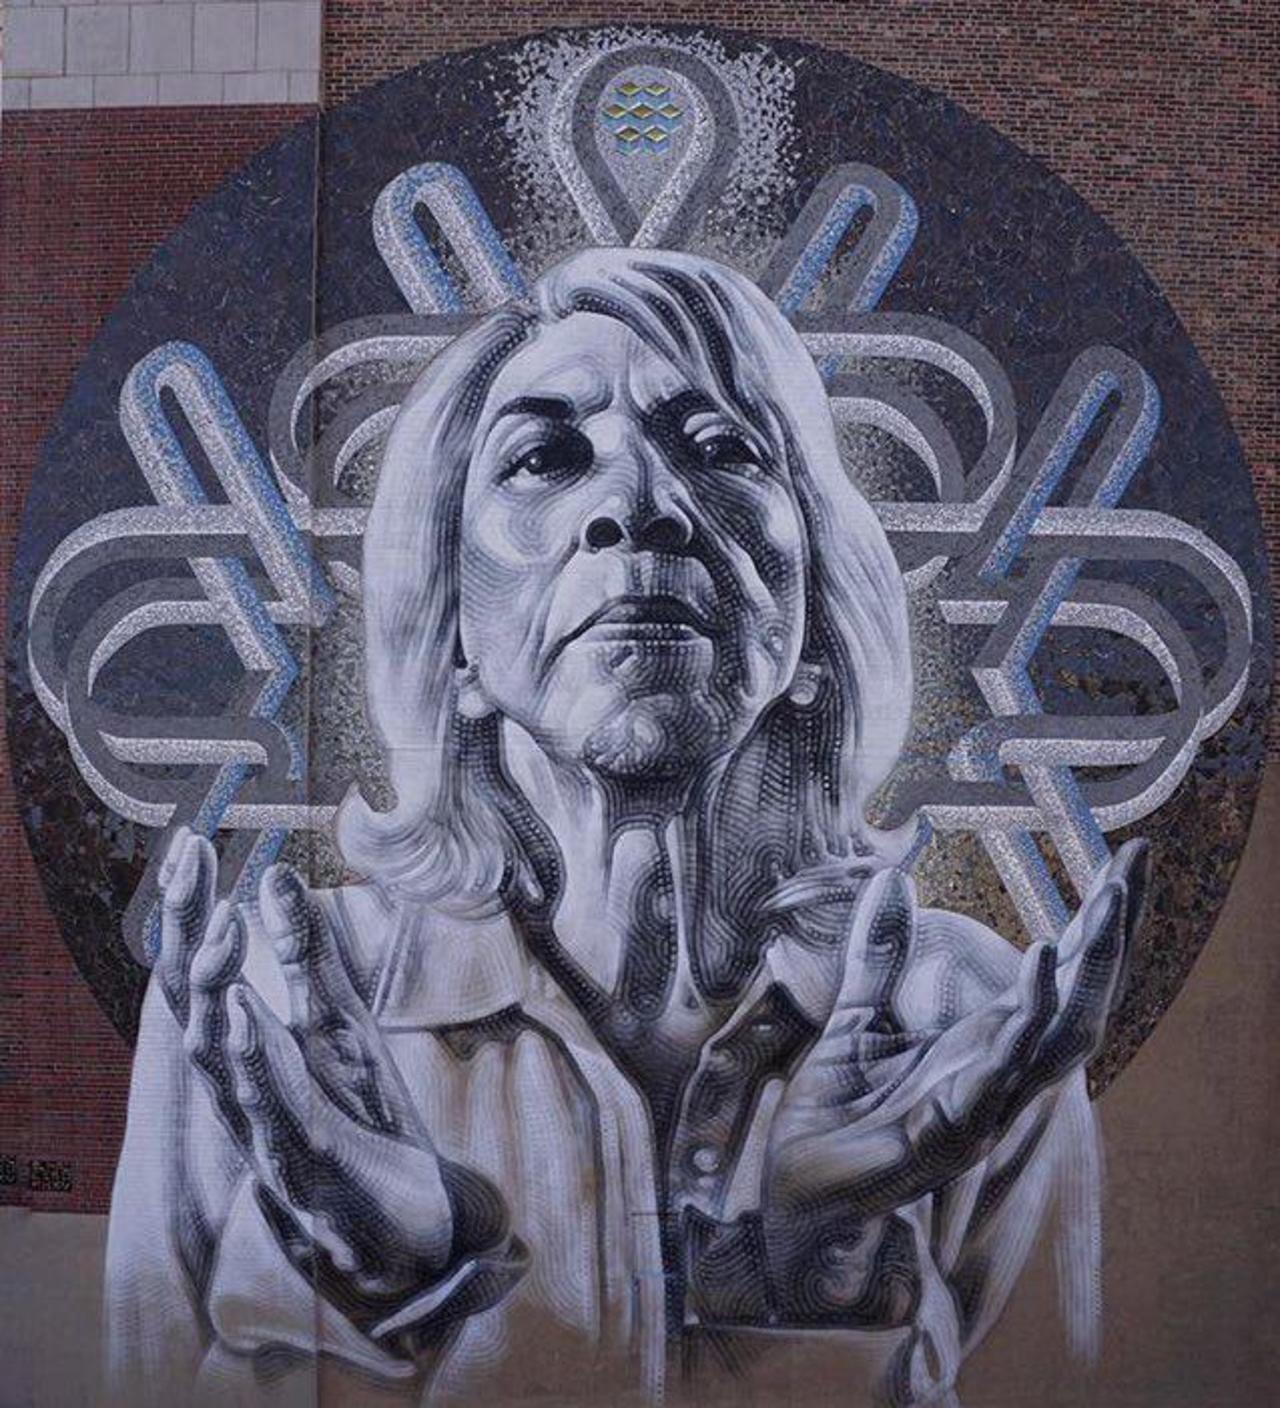 New Street Art by El Mac 

#art #graffiti #mural #streetart https://t.co/gdCFqYUqoM